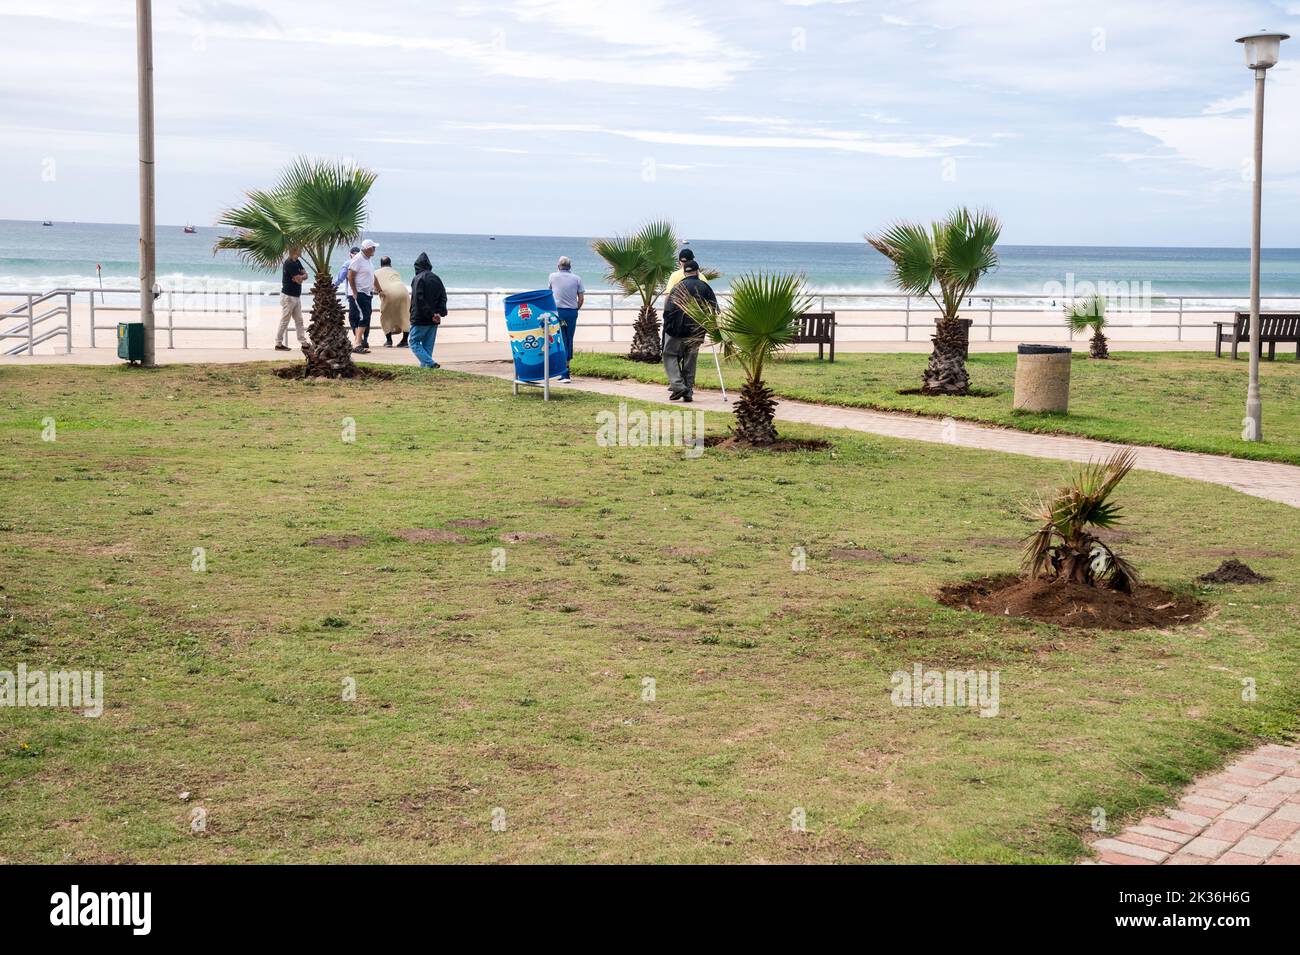 Strandpromenade entlang des parkway, der zum Meer führt, mit dem Ozean im Hintergrund und wachsenden kurzen Palmen Stockfoto